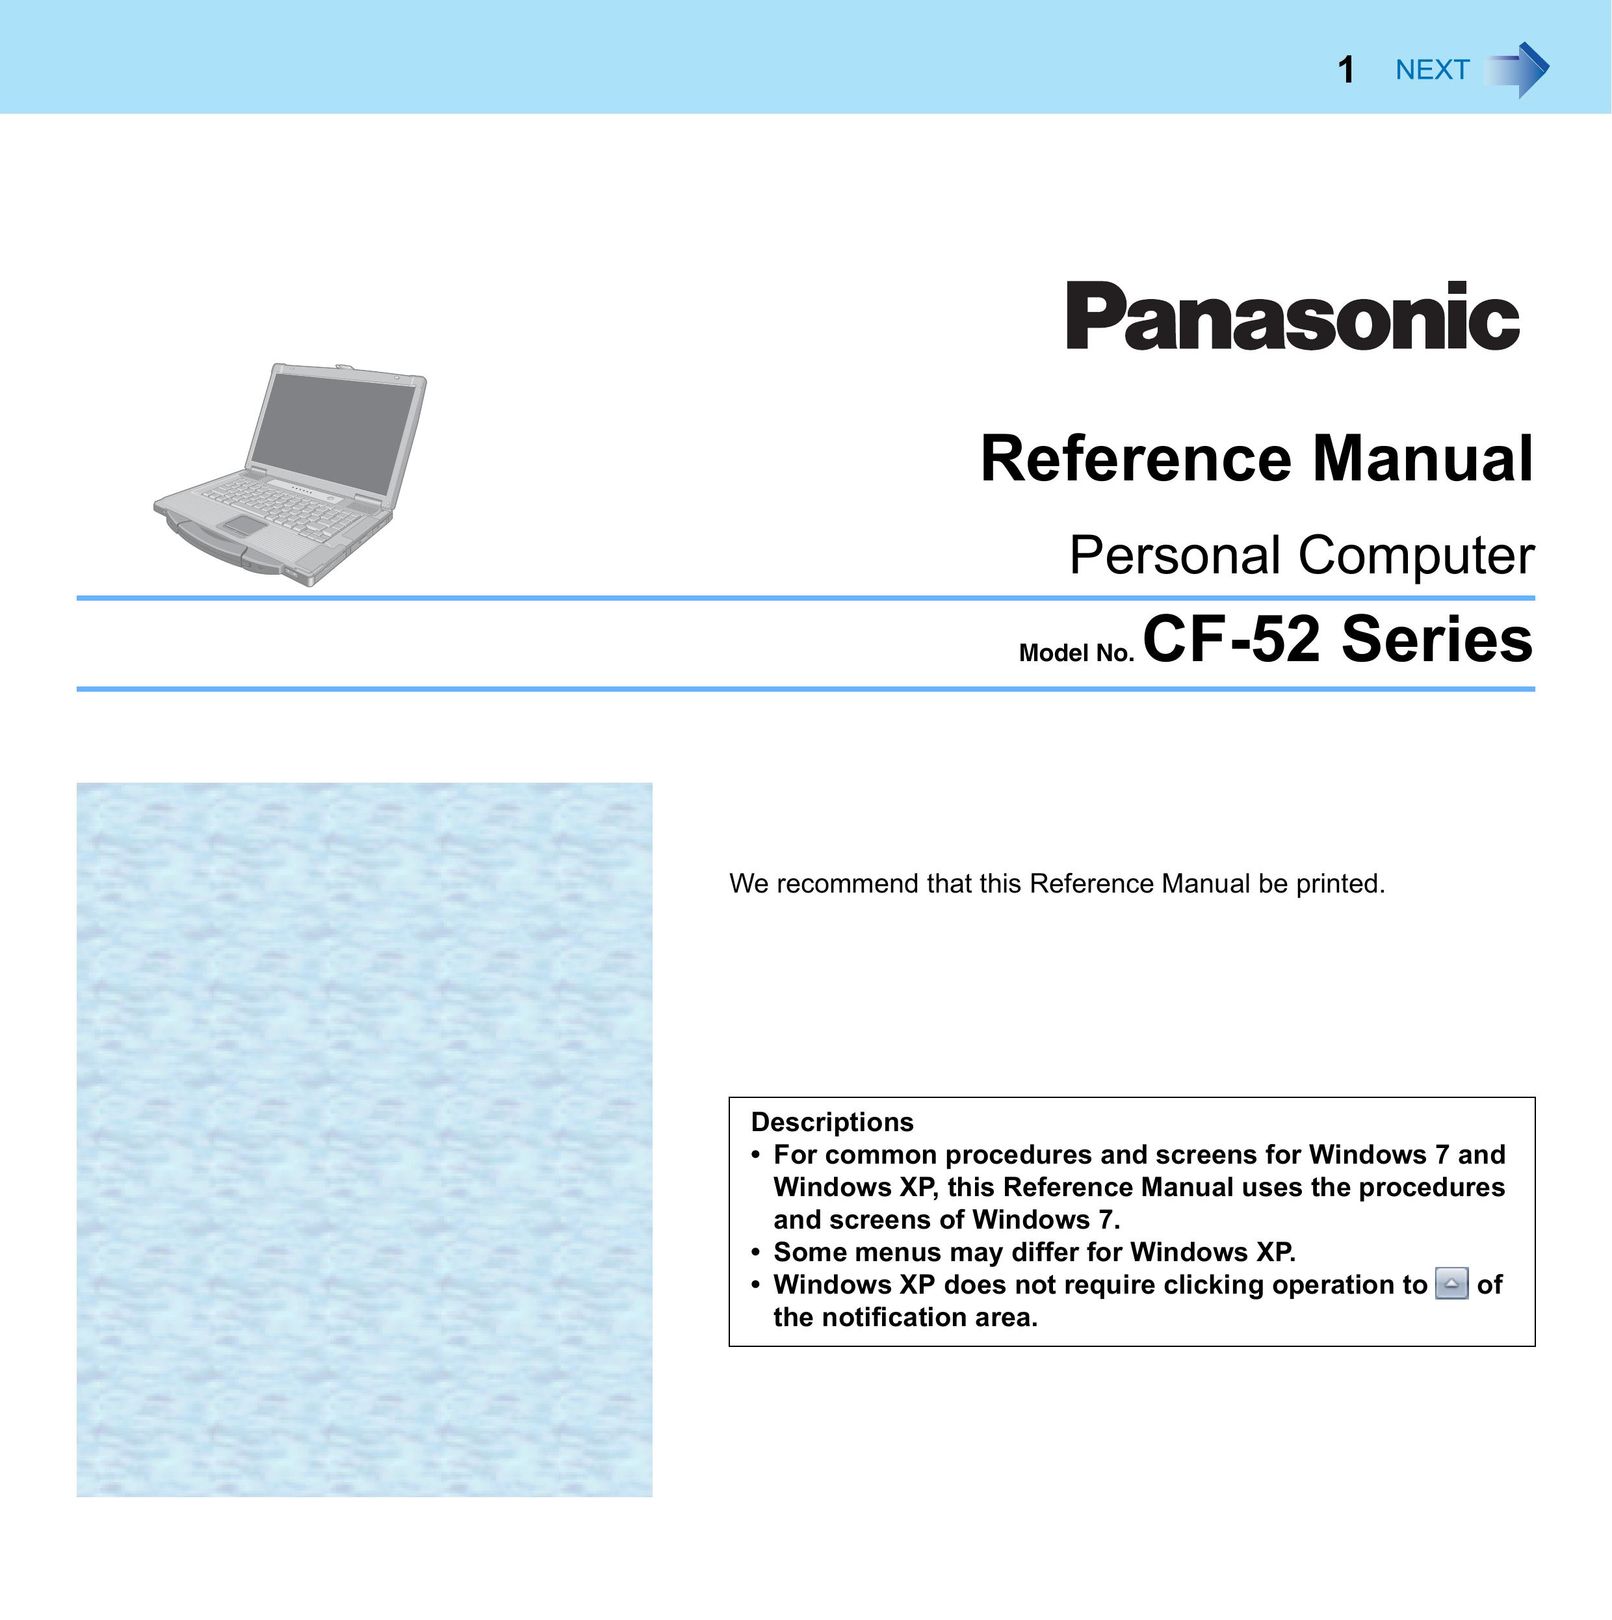 Panasonic CF-52 Personal Computer User Manual